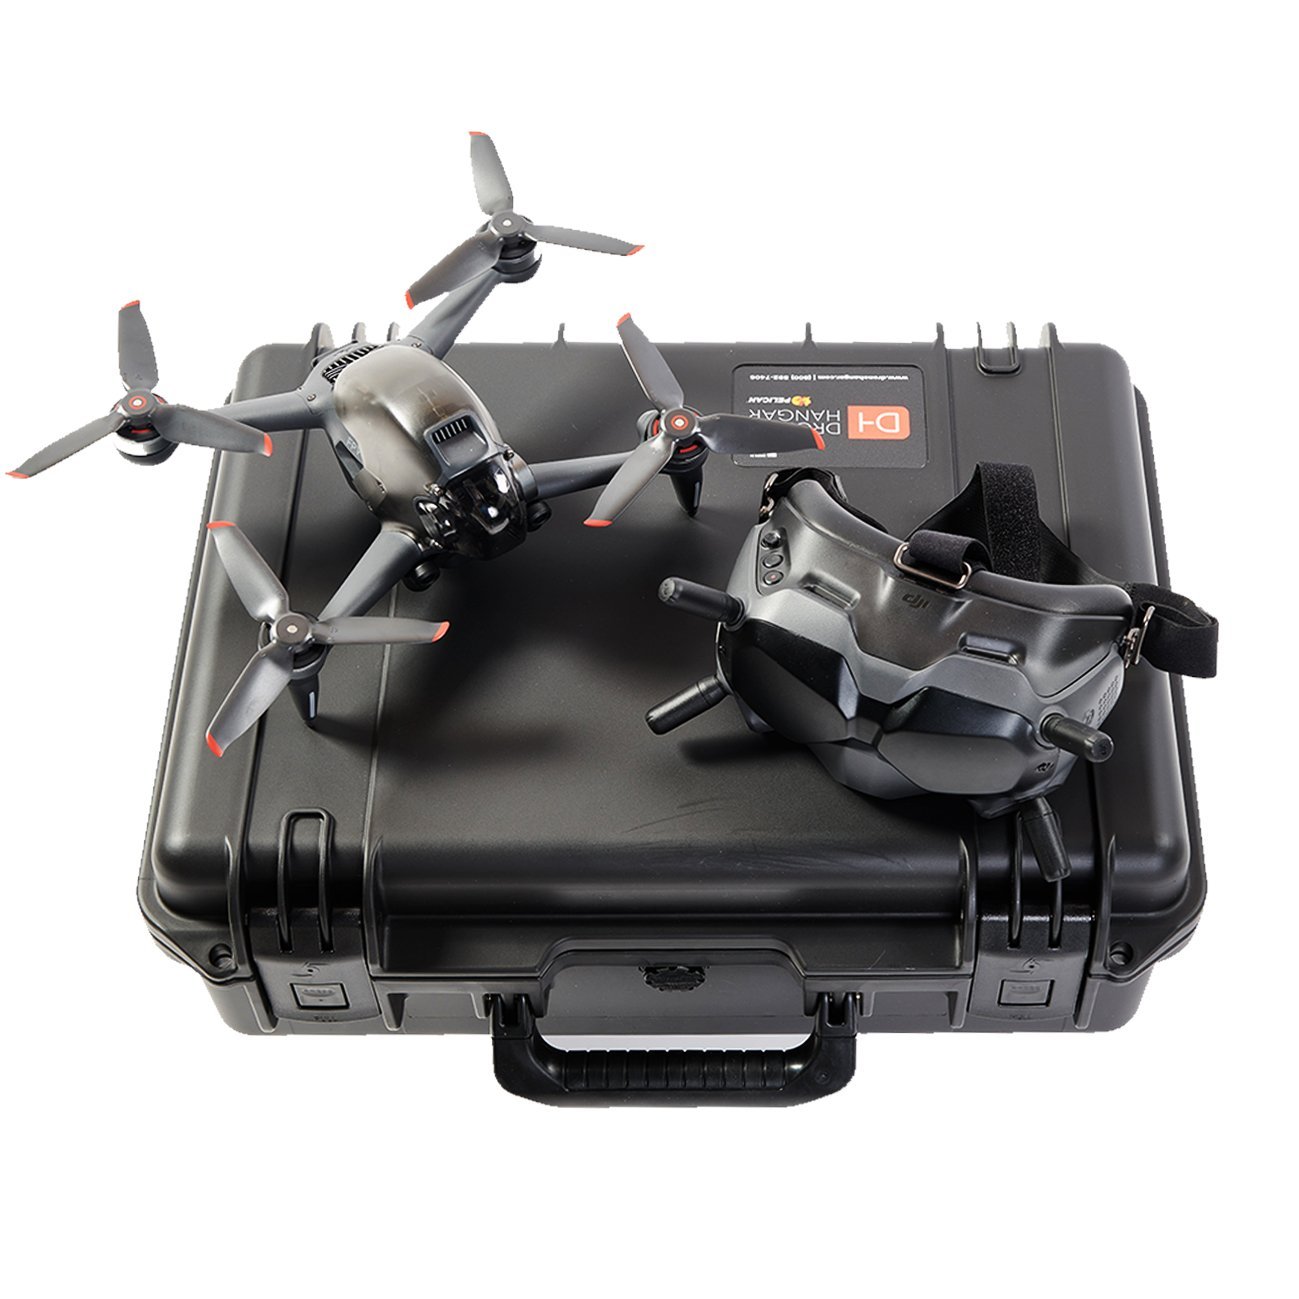 https://dronehangar.com/cdn/shop/products/dji-fpv-drone-case-264946.jpg?v=1619687956